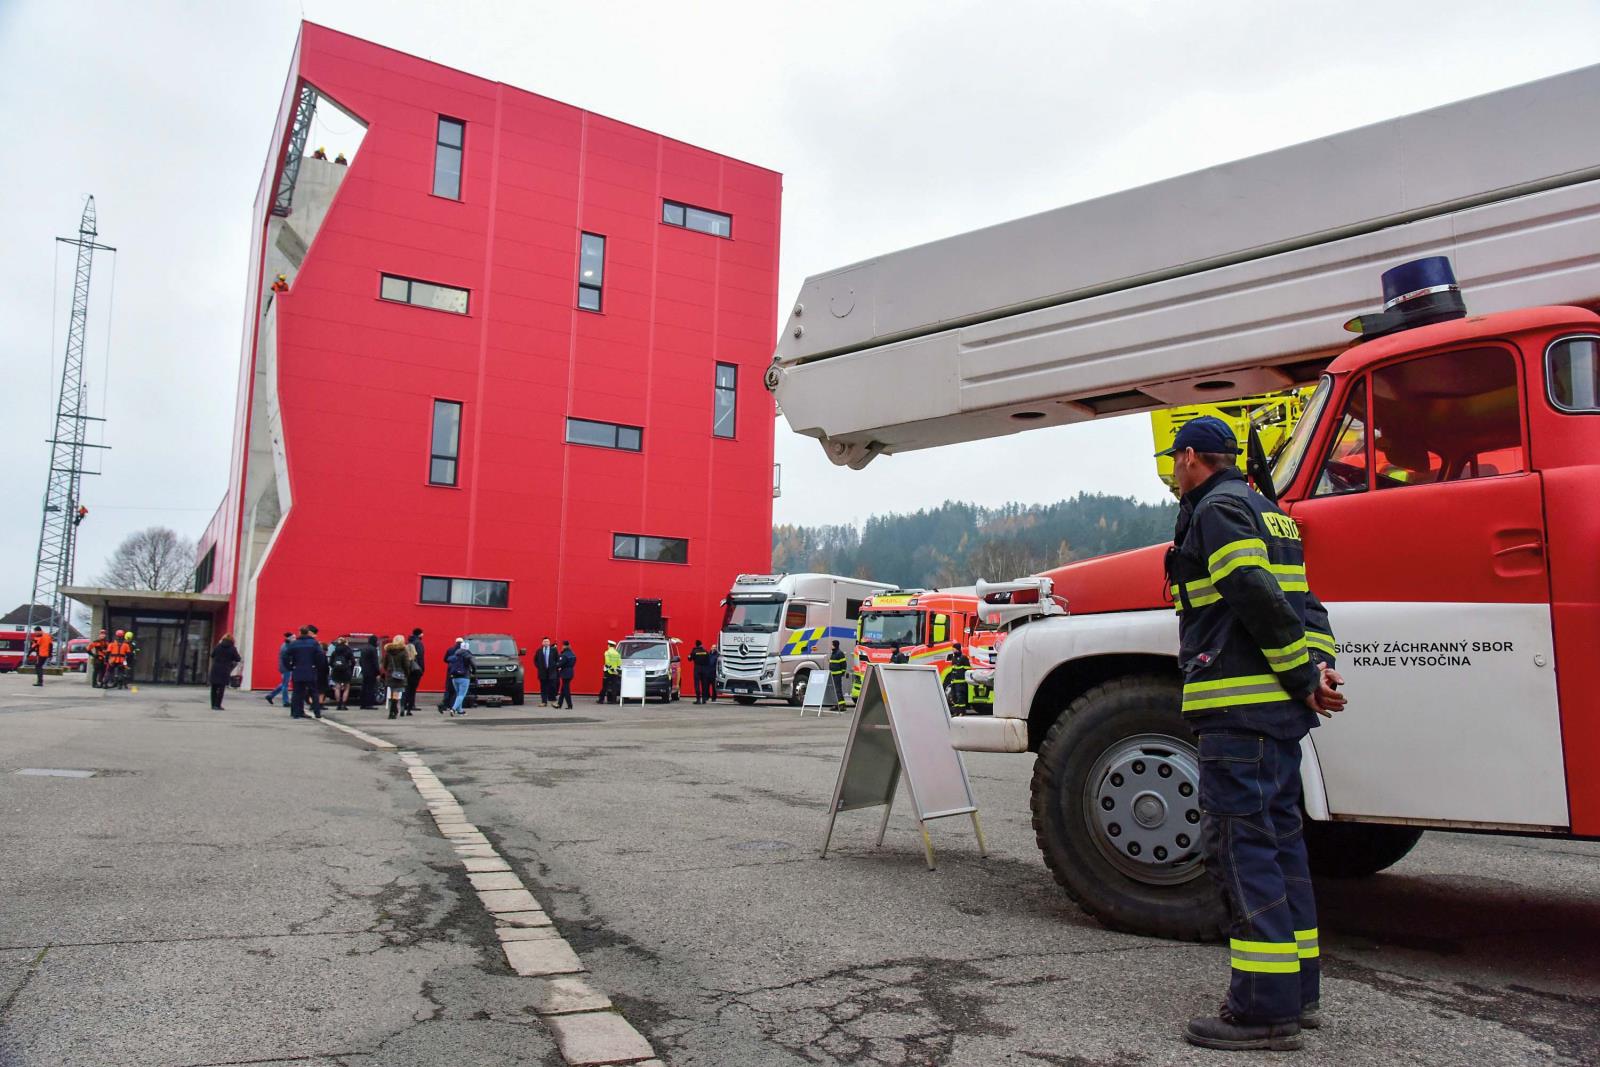 Učiliště požární ochrany ve Velkém Poříčí, jehož součástí je i lezecký polygon, který byl financován z Evropské unie prostřednictvím IROP